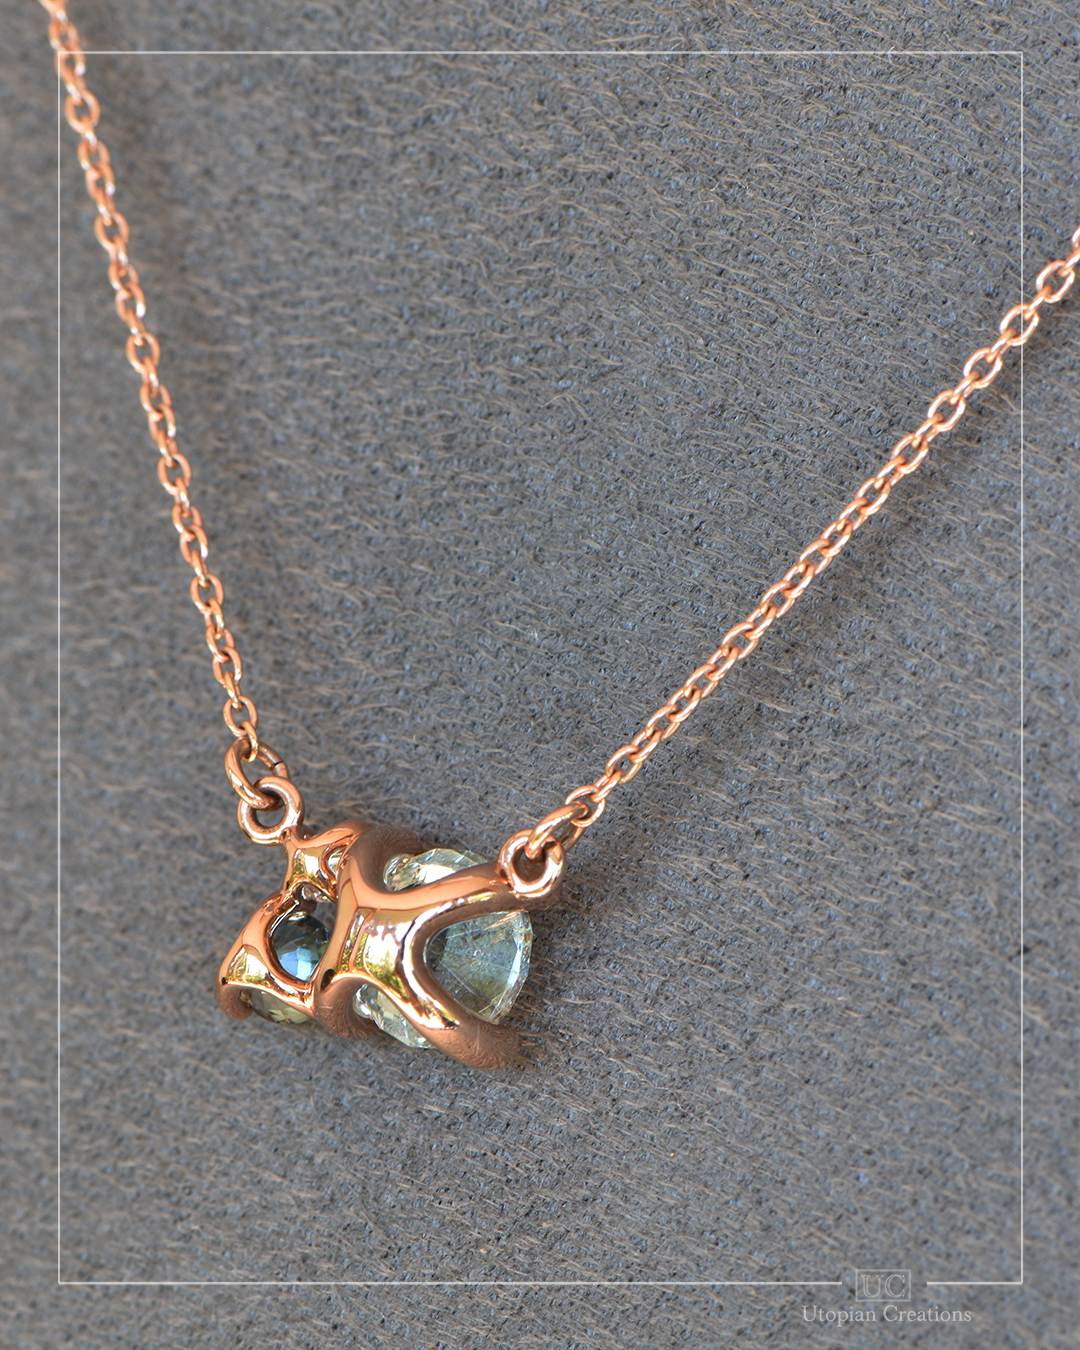 Acacia - Cluster Necklace - Aquamarine, Sapphire, Diamond